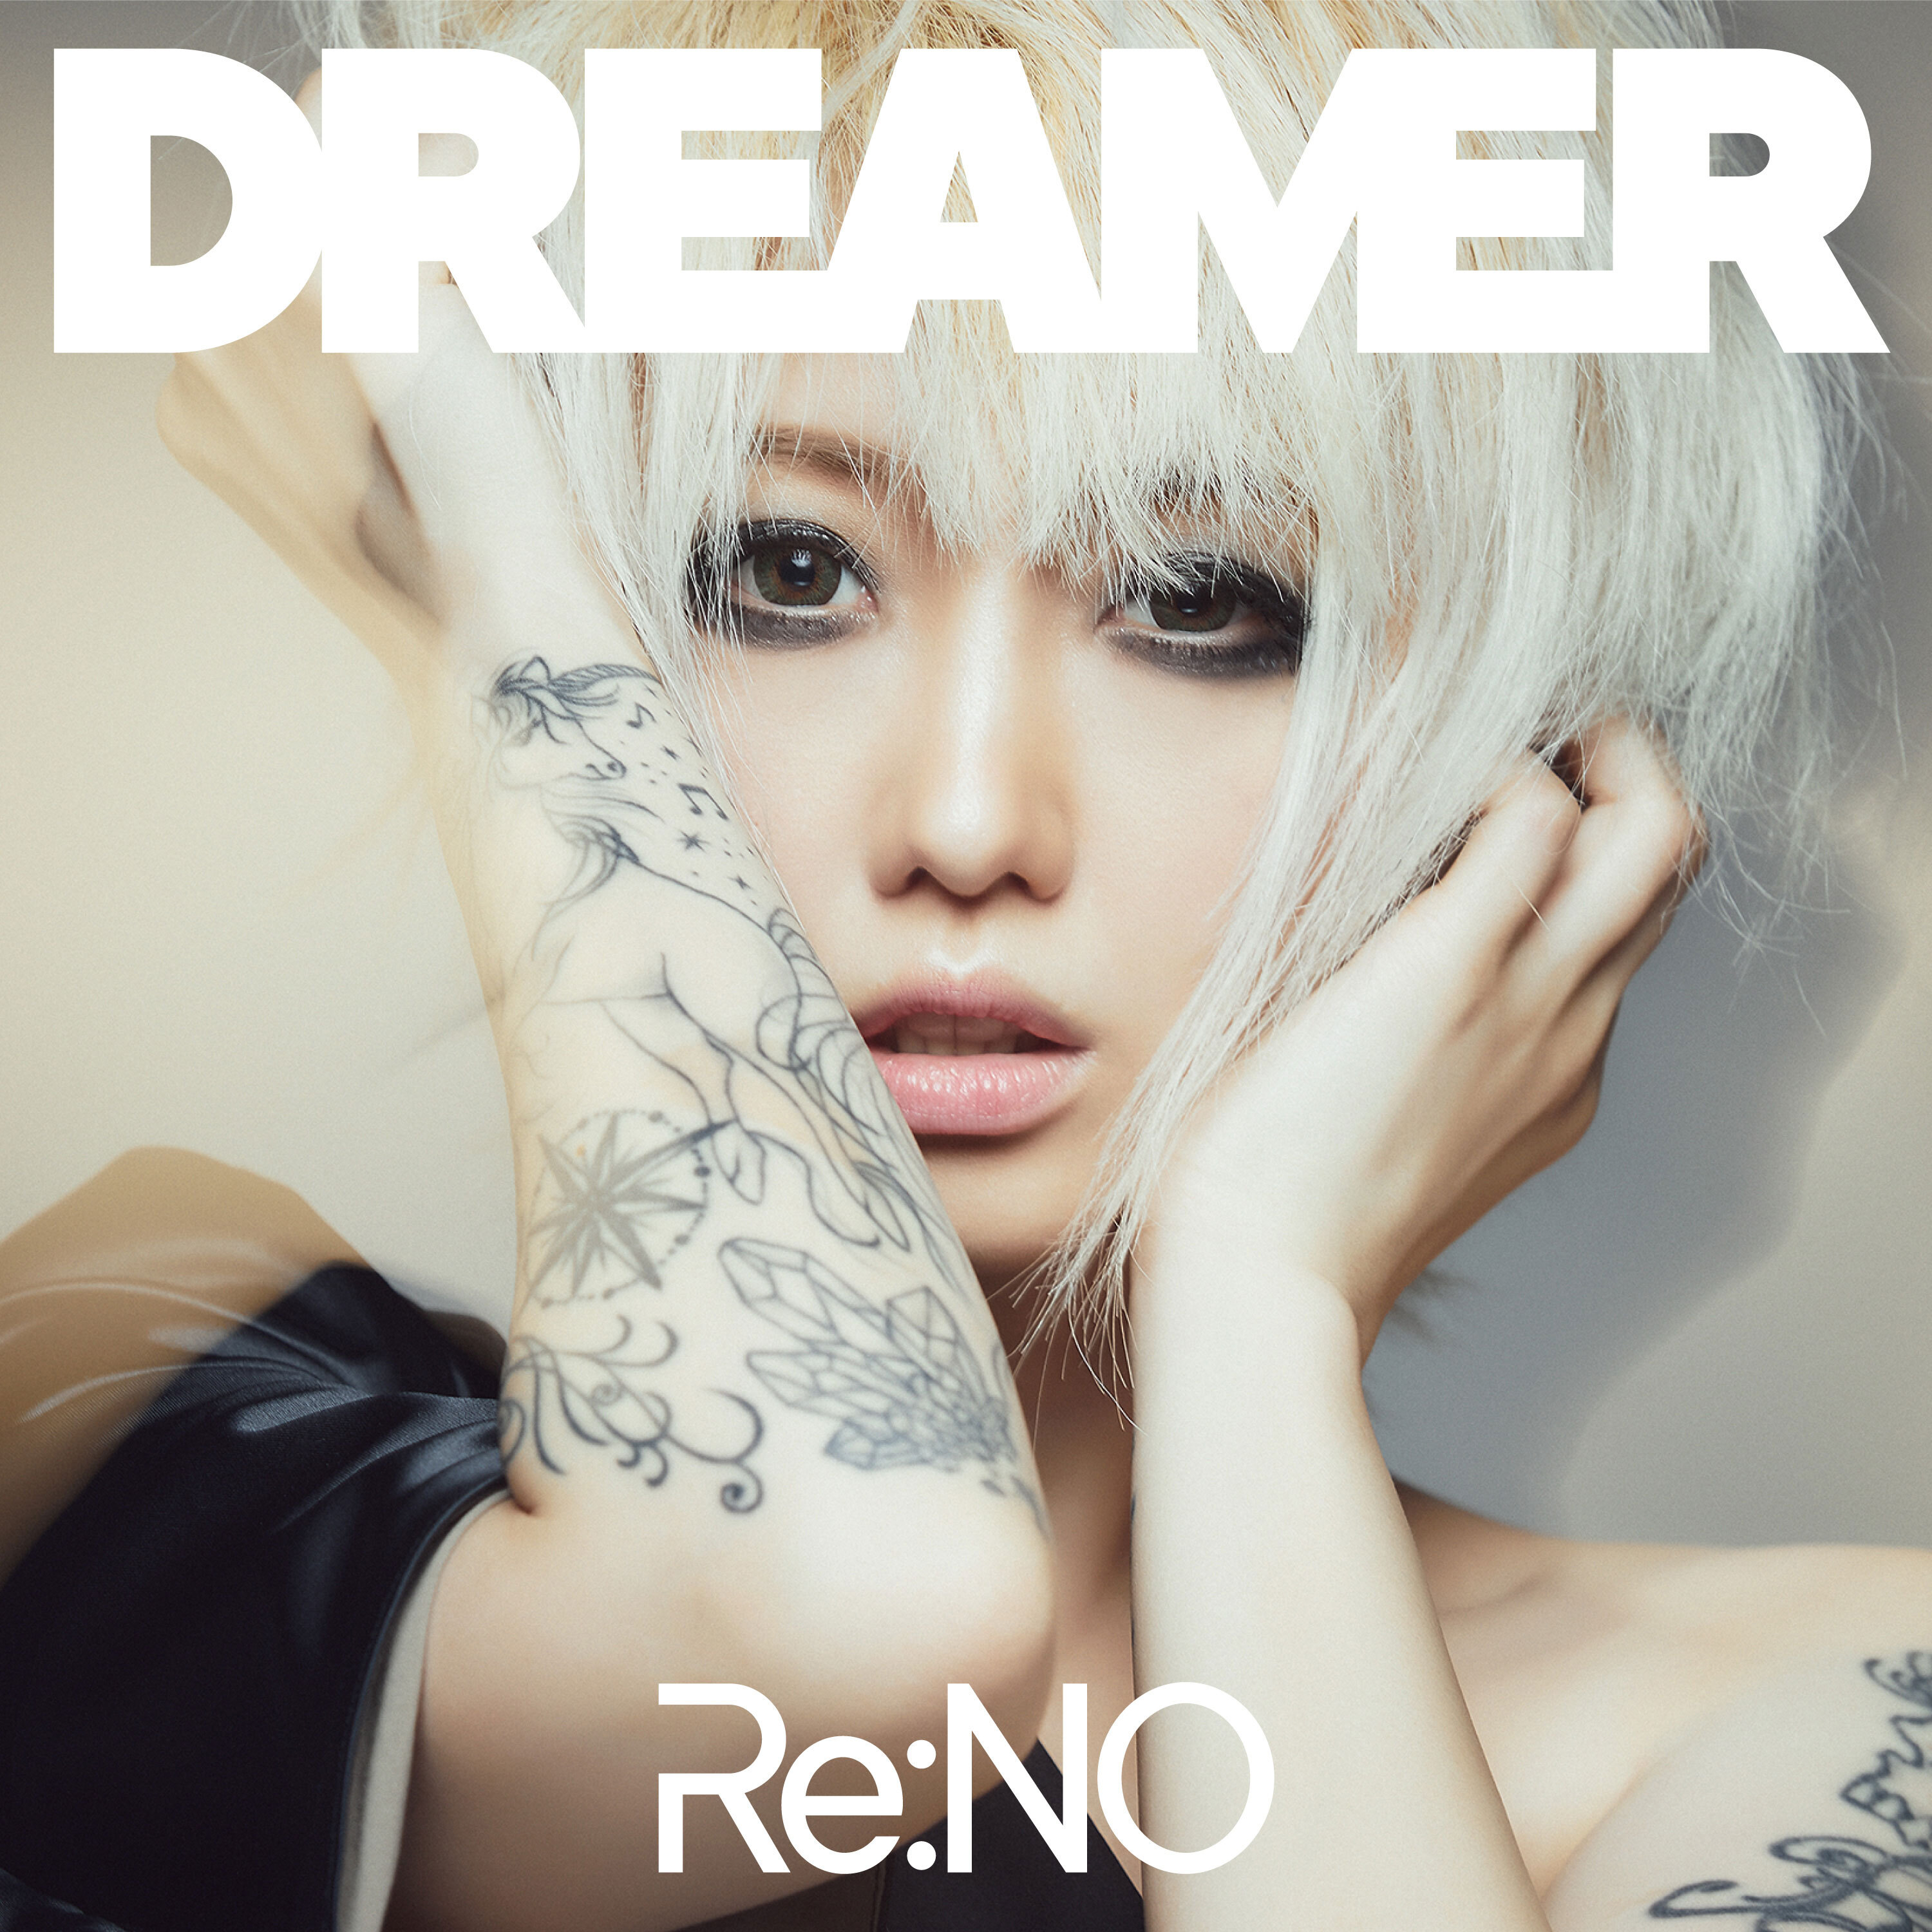 Re:NO - Dreamer